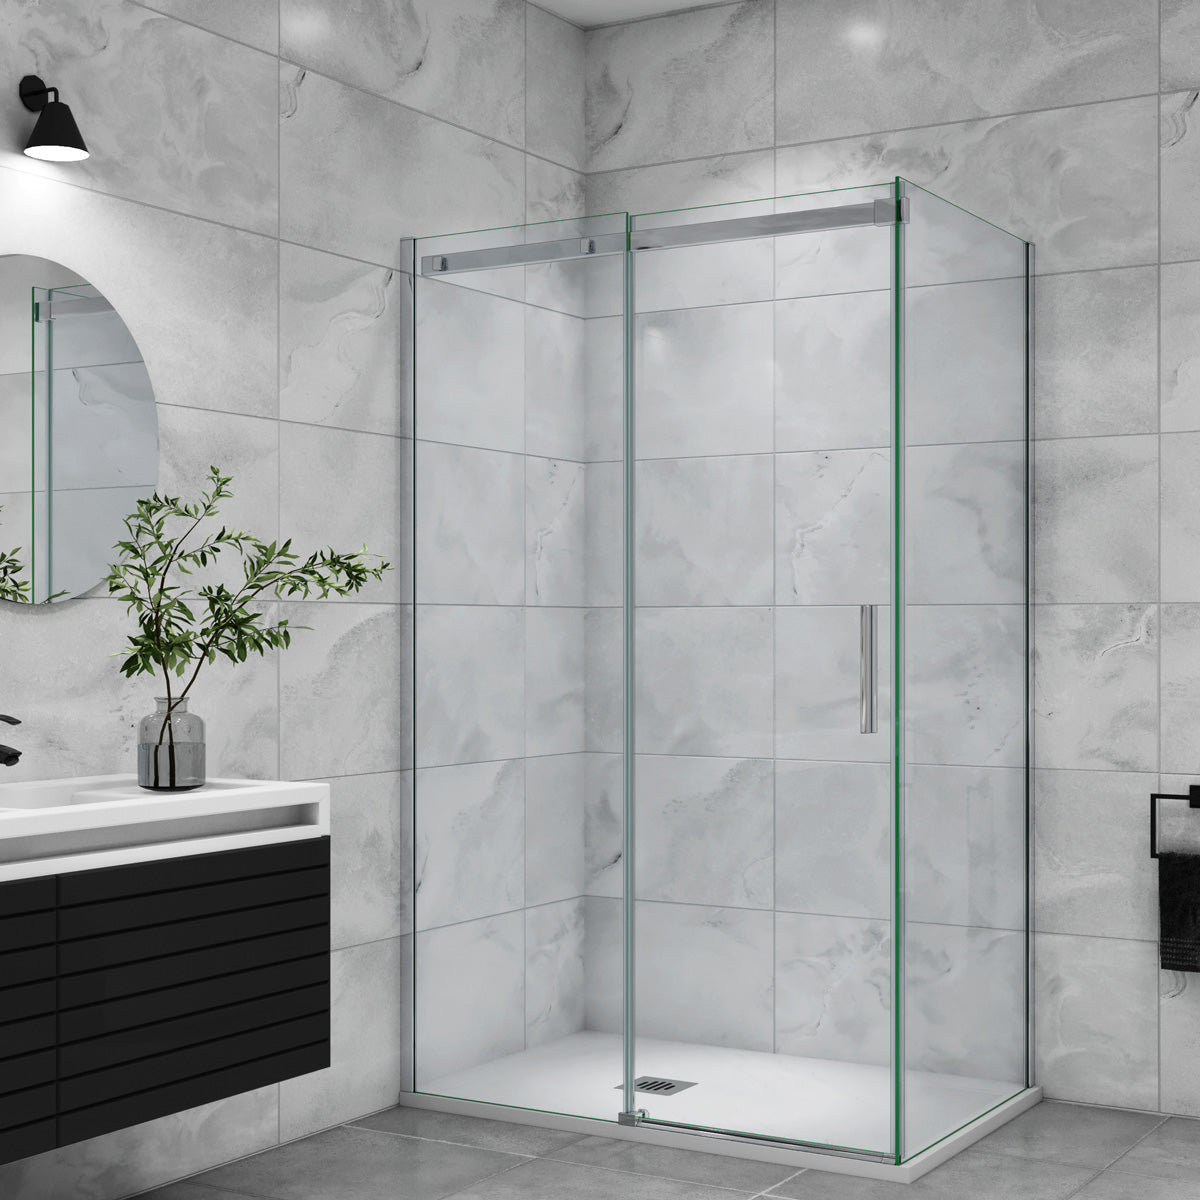 Duschtür+Seitenwand Schiebetür 140x80 cm Glasstärke 6mm Dusche Duschabtrennung Duschkabine